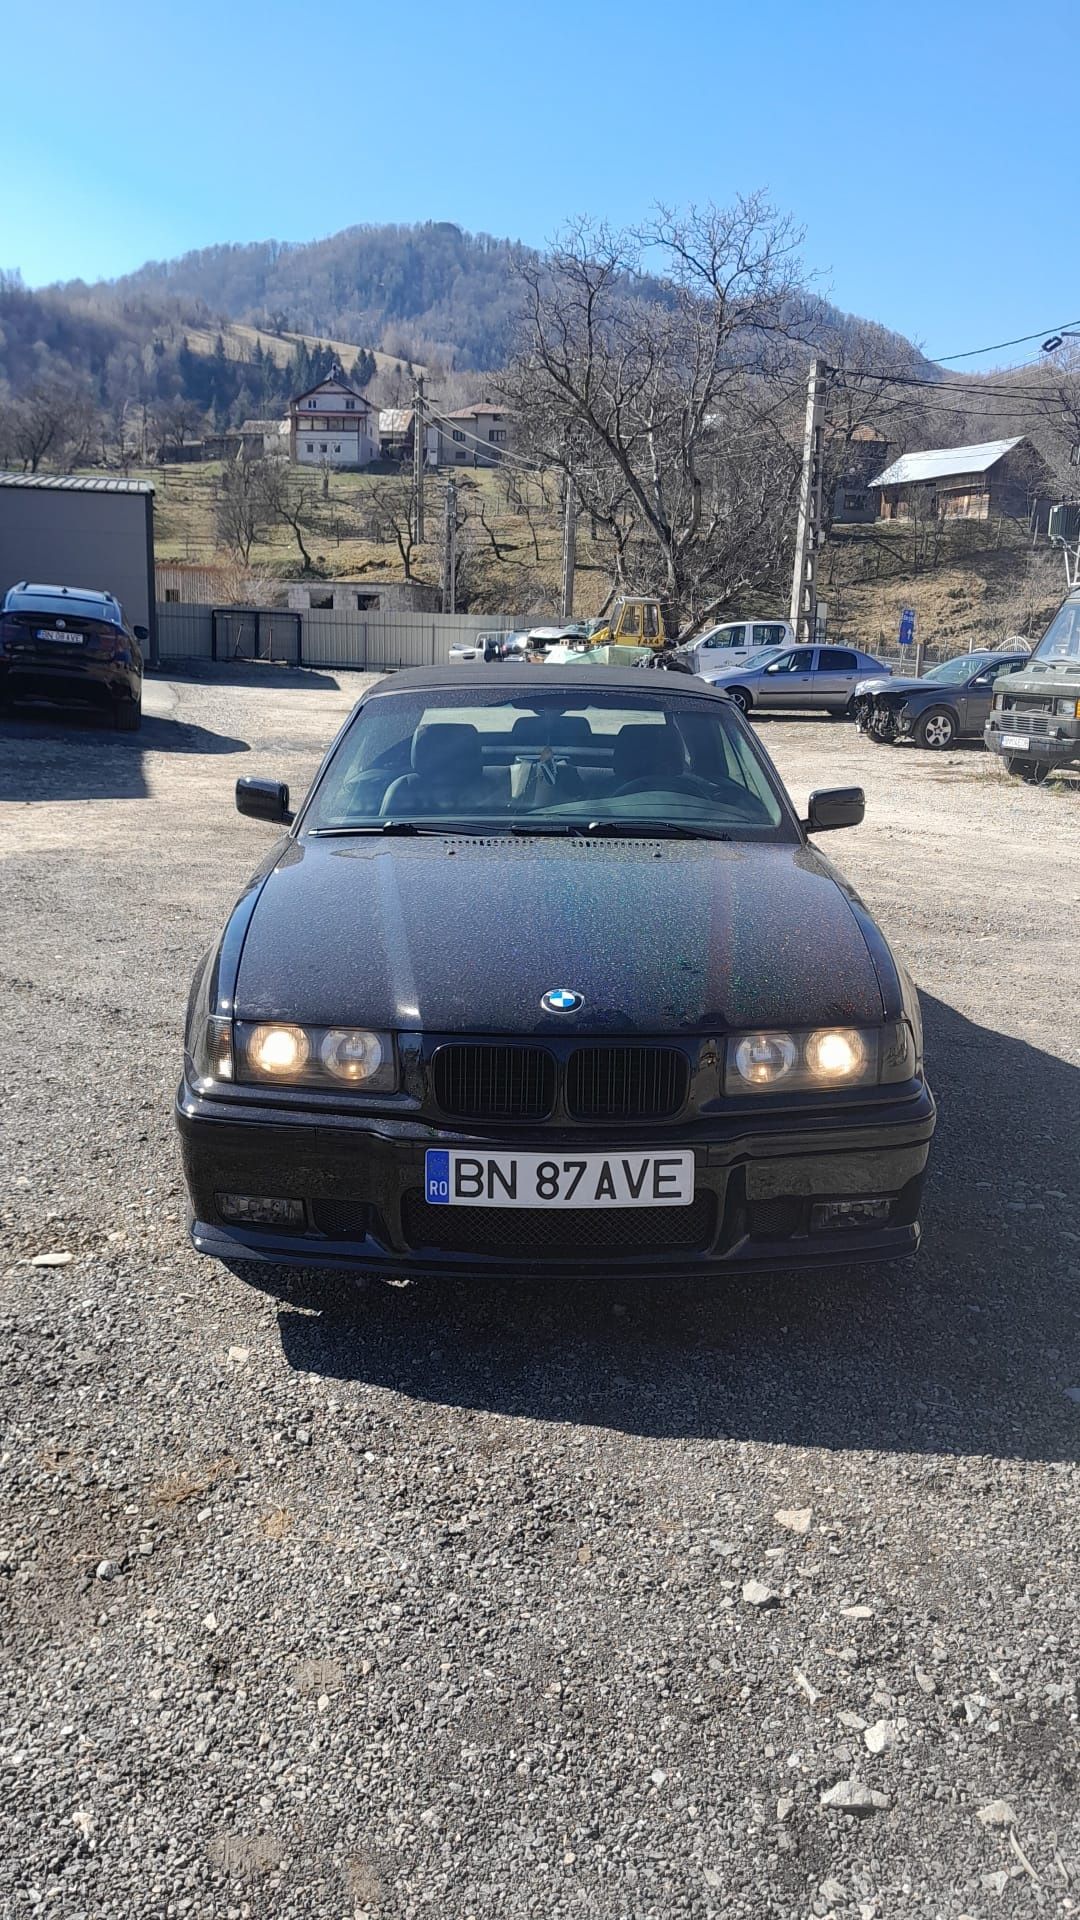 BMW E36 cabrio, fabricație 1994, 1990 benzina, culoare negru.